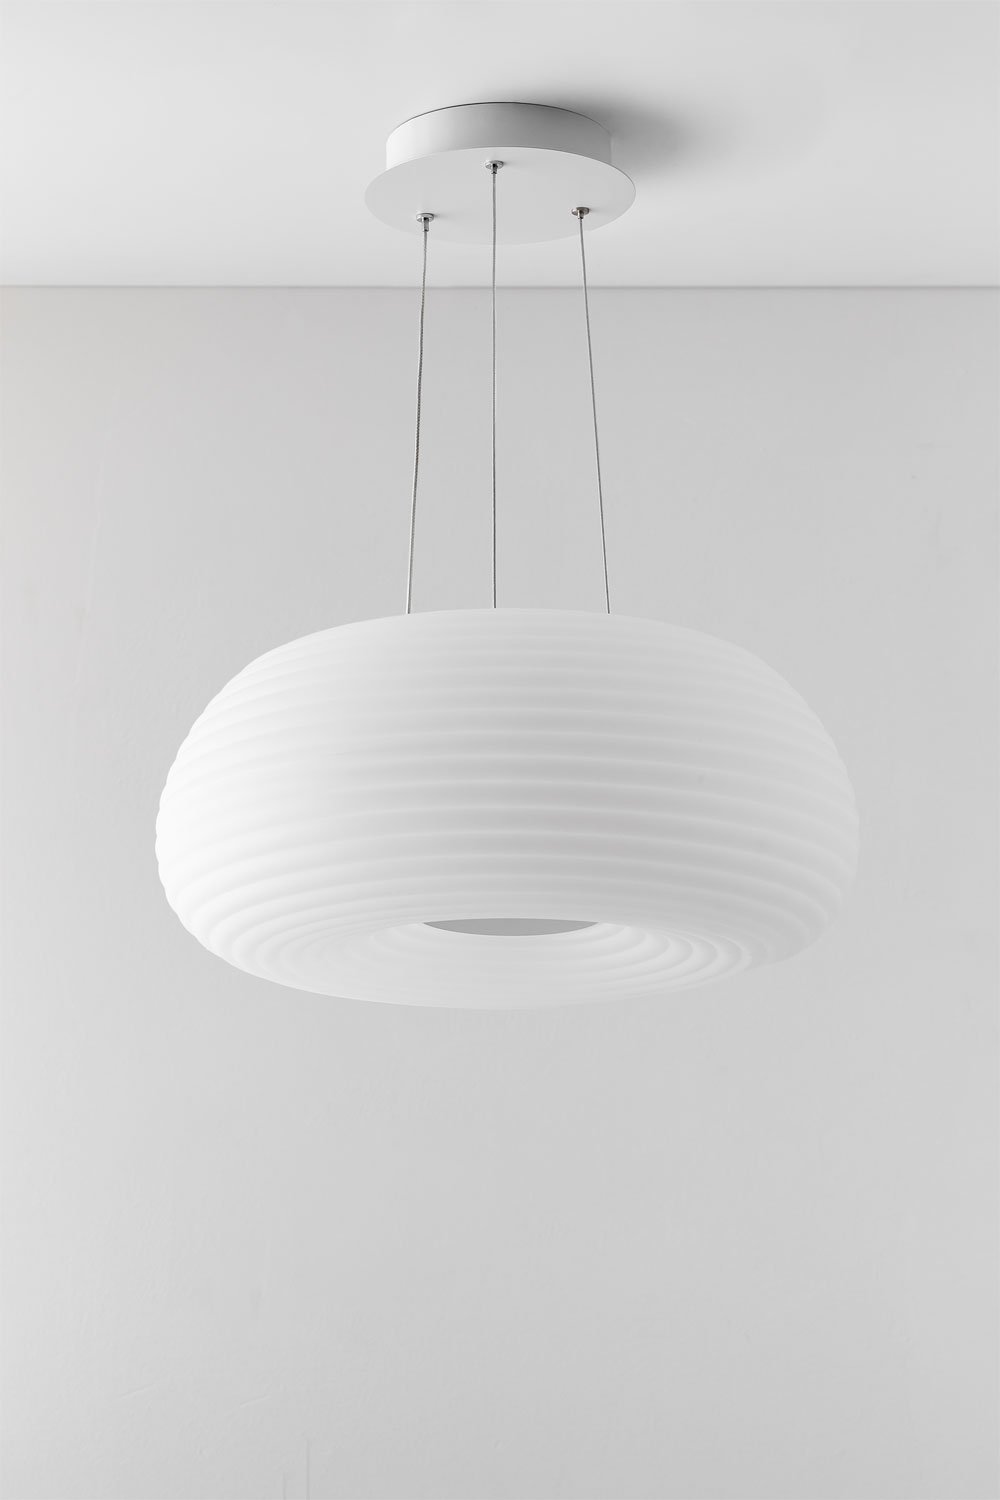 LED-plafondlamp Dante, galerij beeld 1